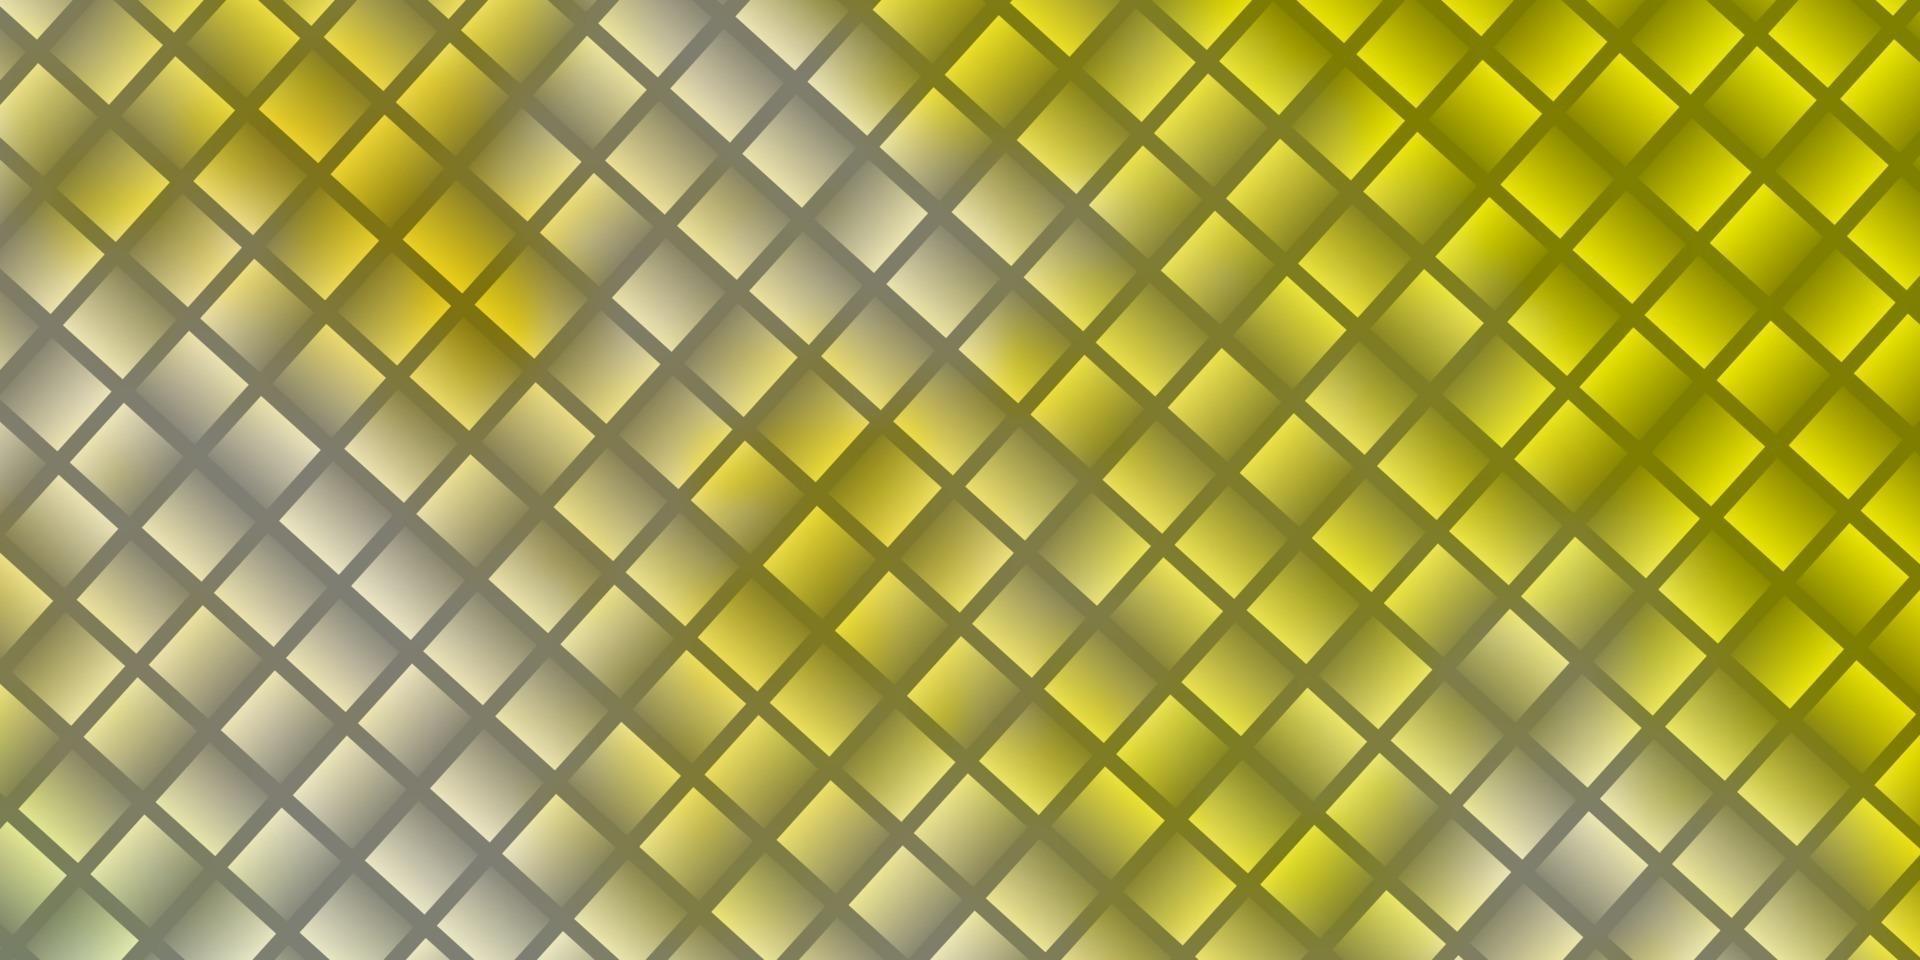 ljusgrön, gul vektormall med rektanglar. vektor